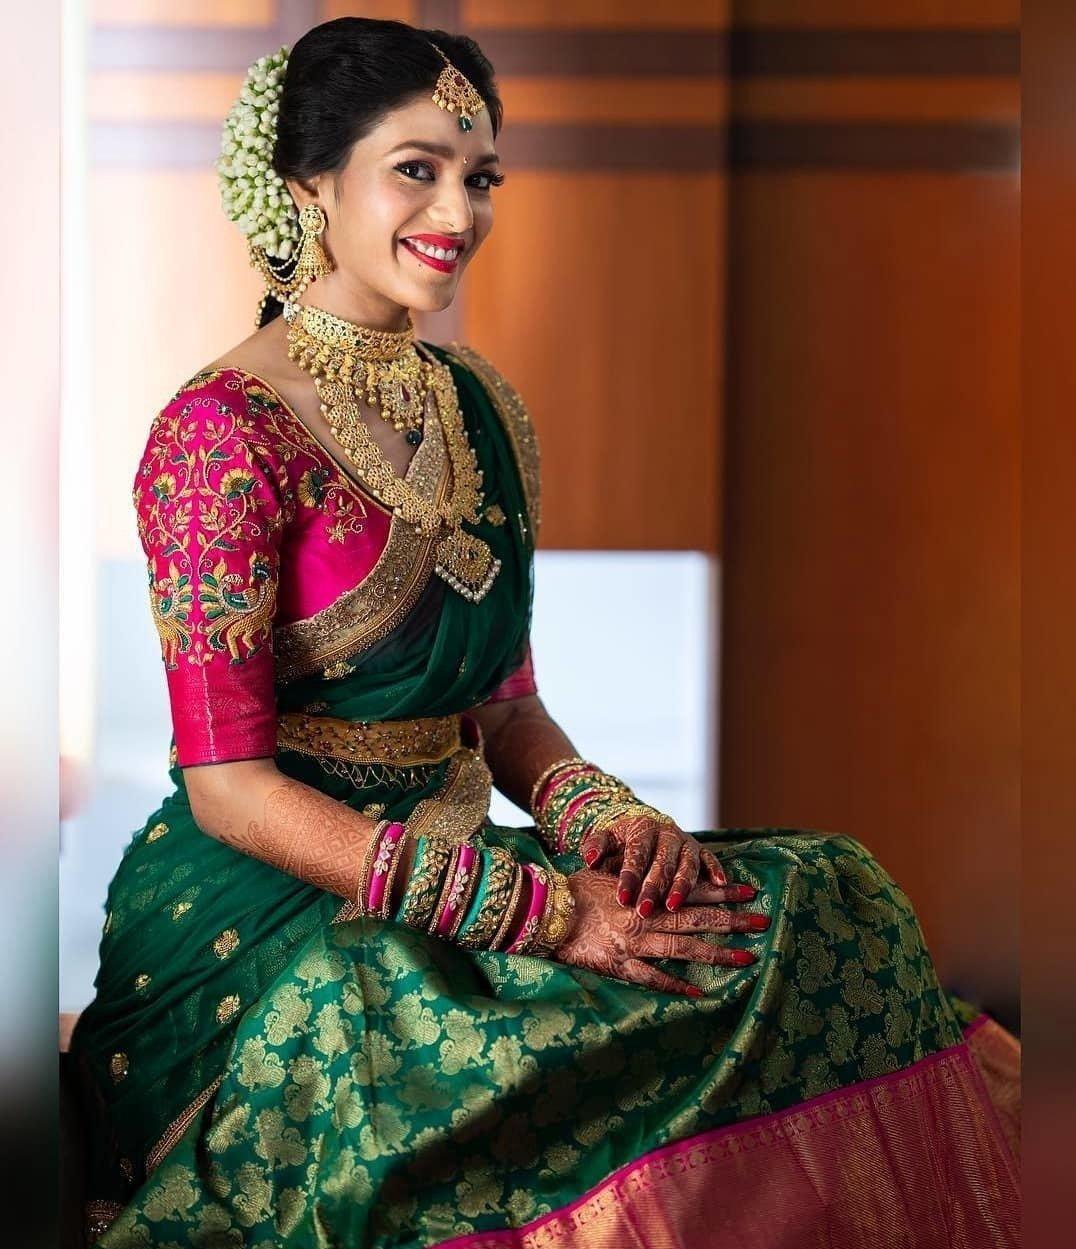 The Latest Saree Fashion Tips To Follow This Wedding Season!